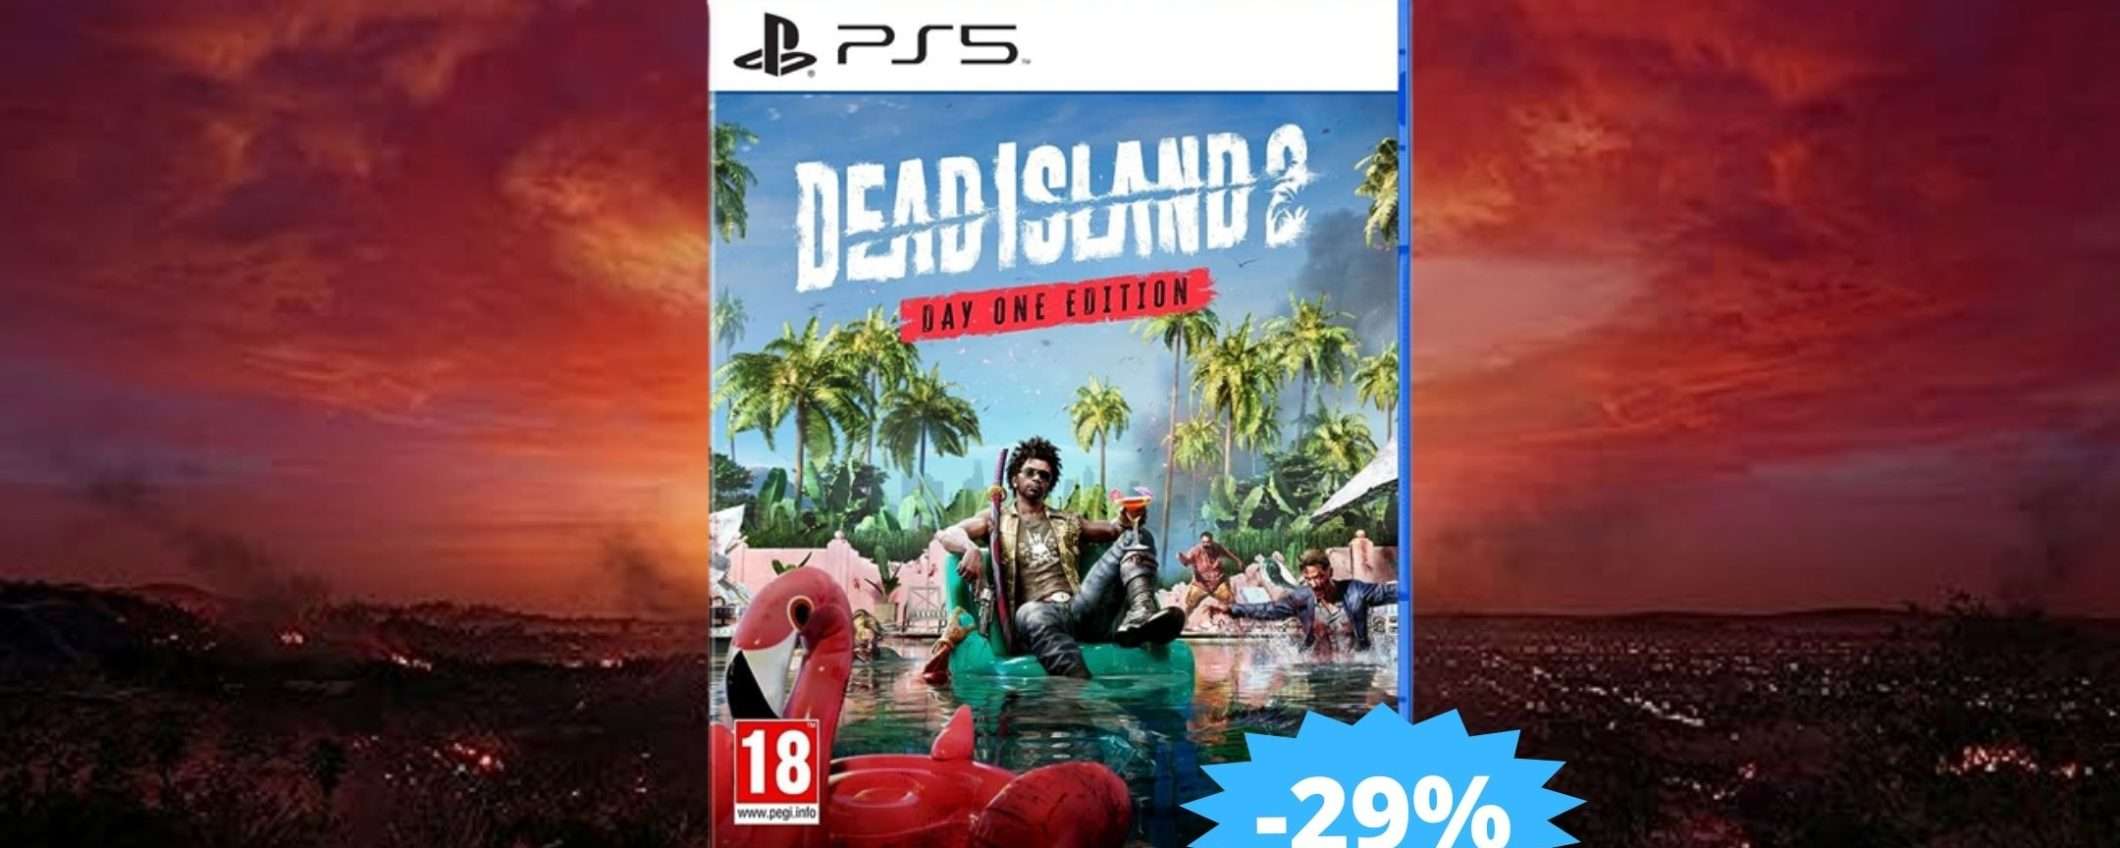 Dead Island 2 PS5: SUPER sconto del 29% su Amazon